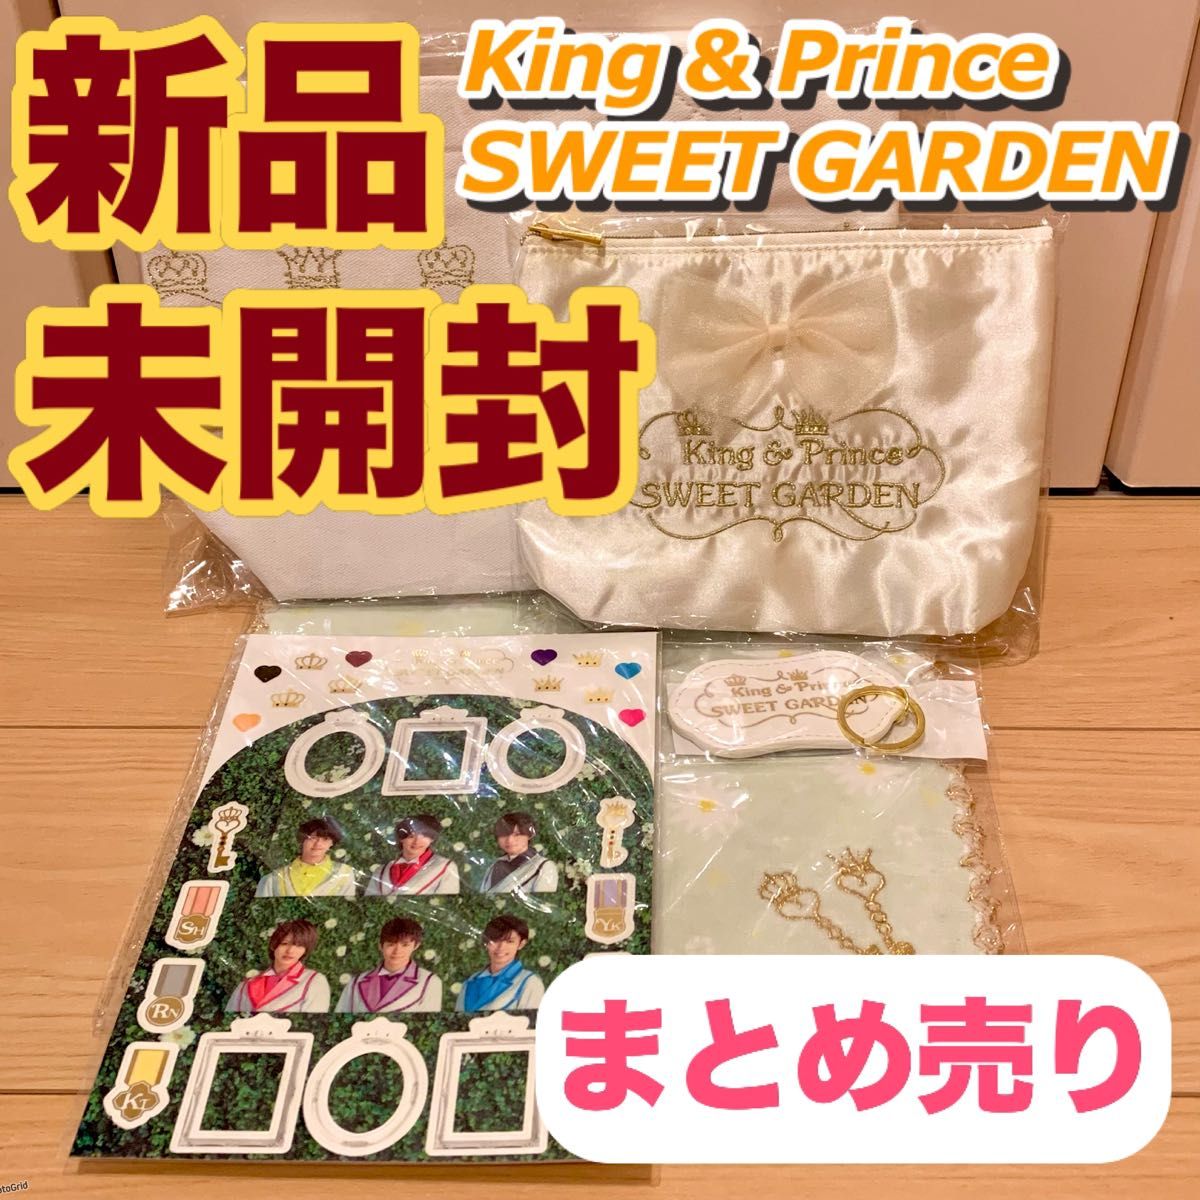 【極美品】King & Prince SWEET GARDEN グッズまとめ売り